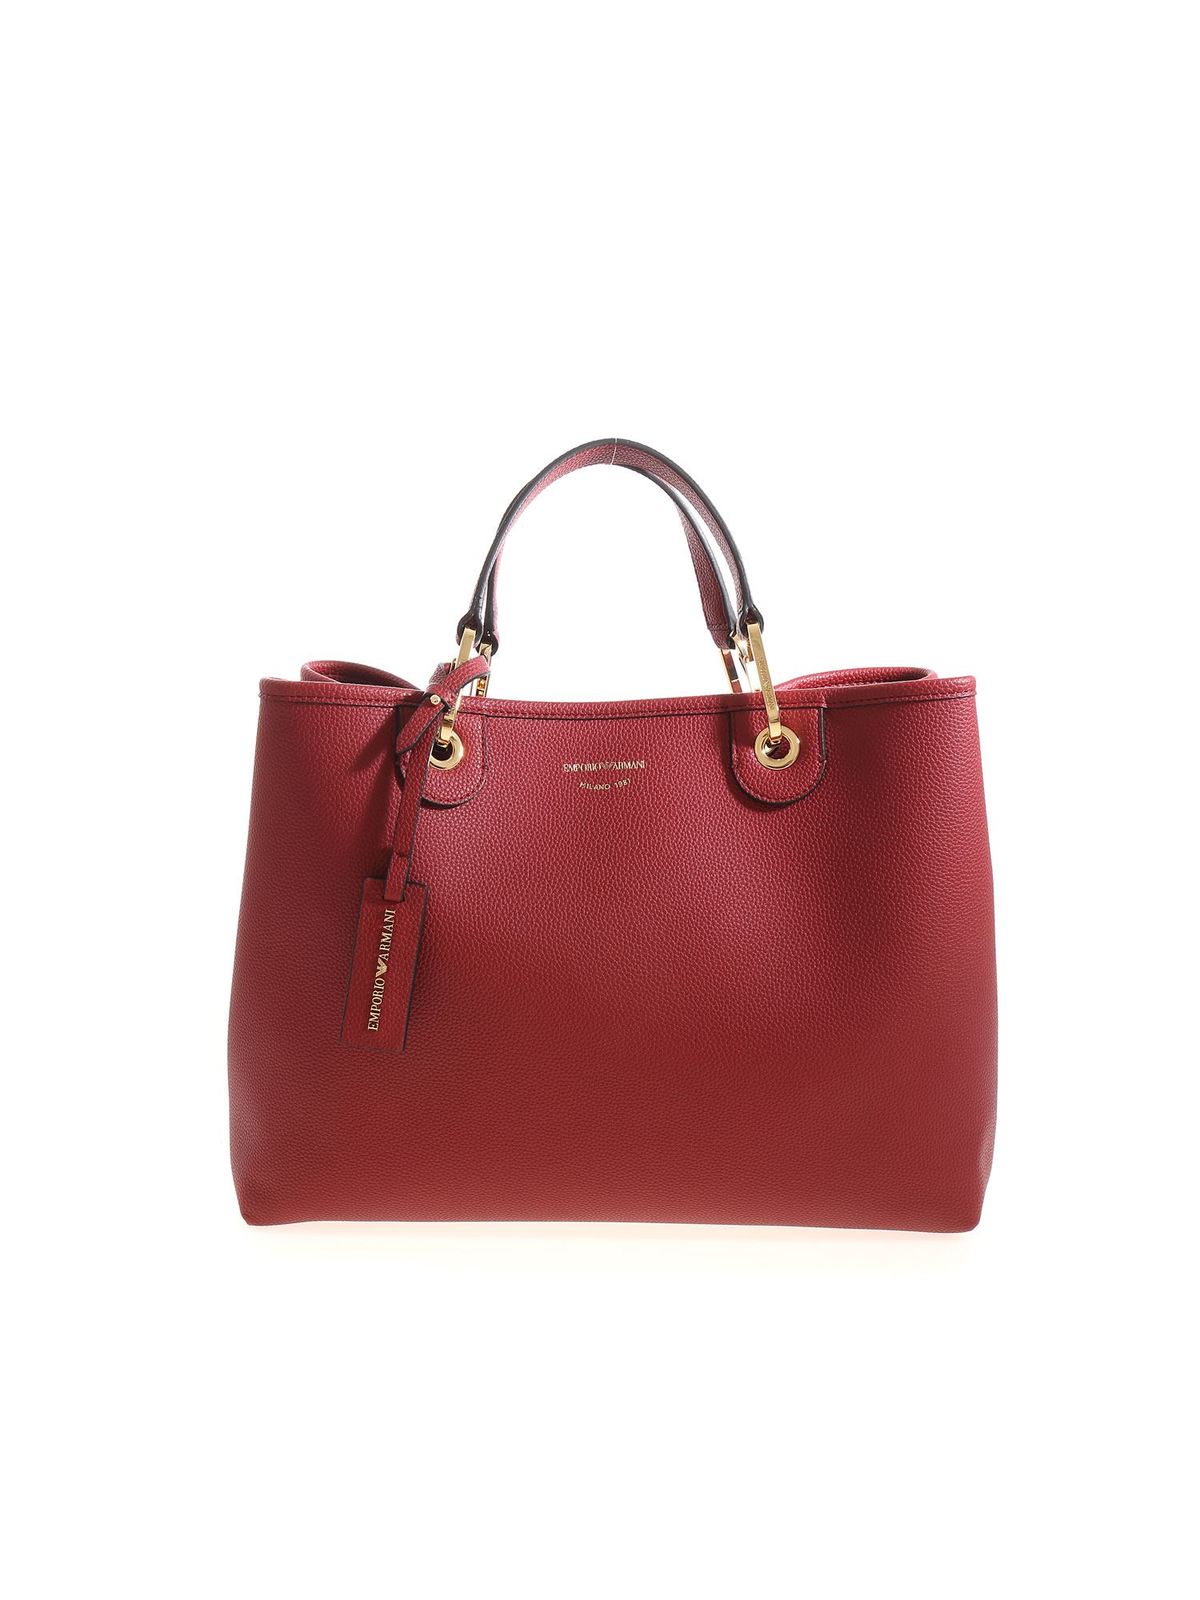 Totes bags Emporio Armani - Red branded handbag - Y3D165YFO5B82244